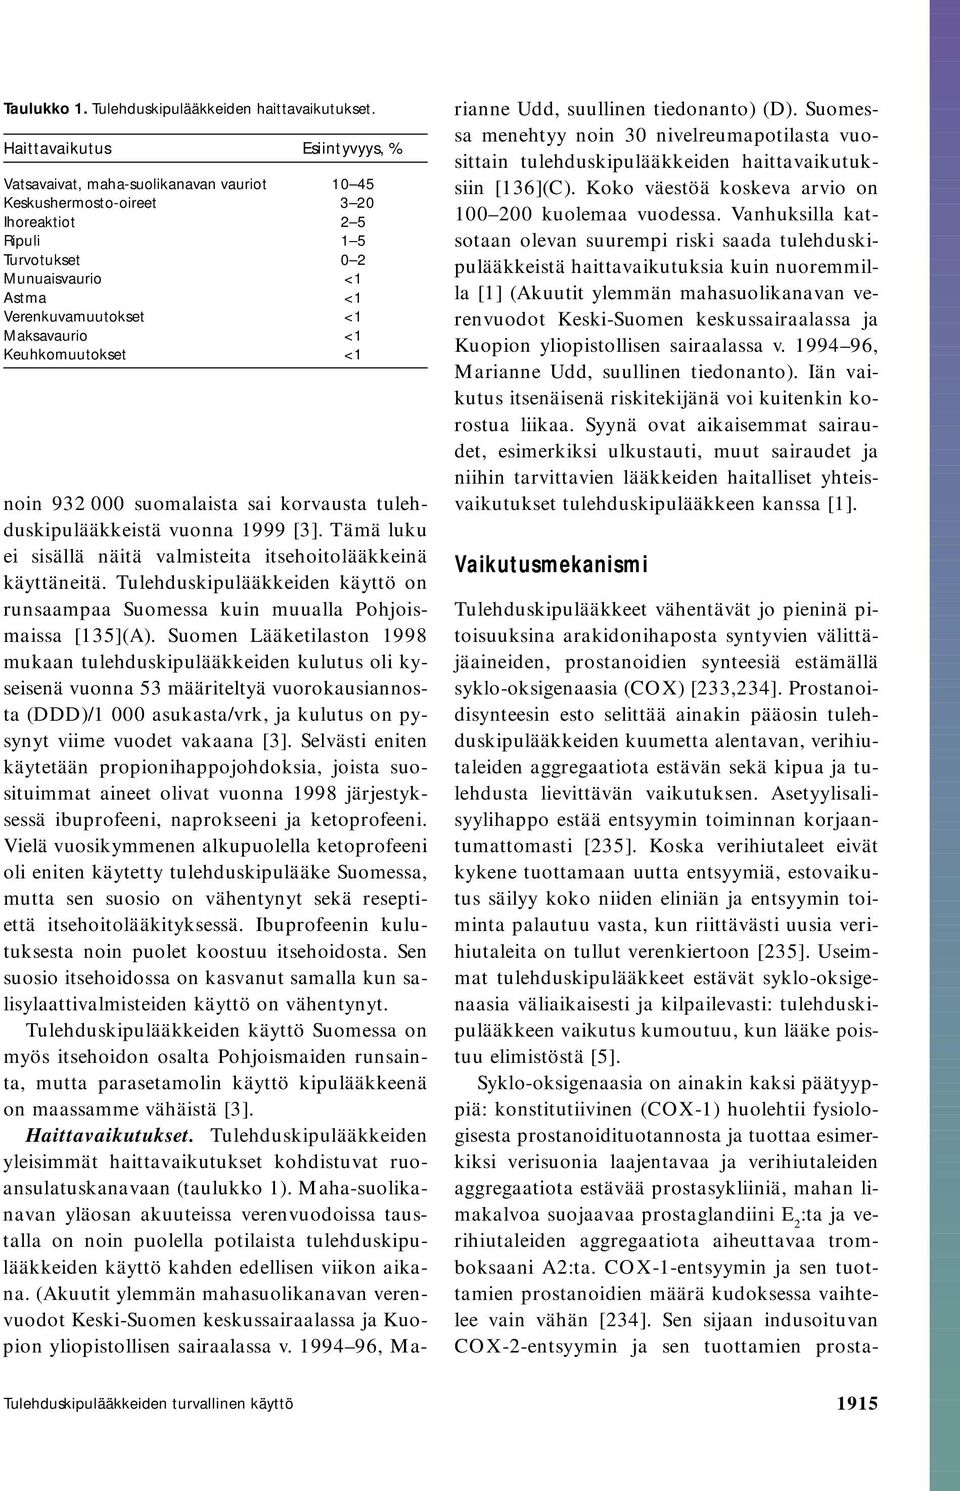 Maksavaurio <1 Keuhkomuutokset <1 noin 932 000 suomalaista sai korvausta tulehduskipulääkkeistä vuonna 1999 [3]. Tämä luku ei sisällä näitä valmisteita itsehoitolääkkeinä käyttäneitä.